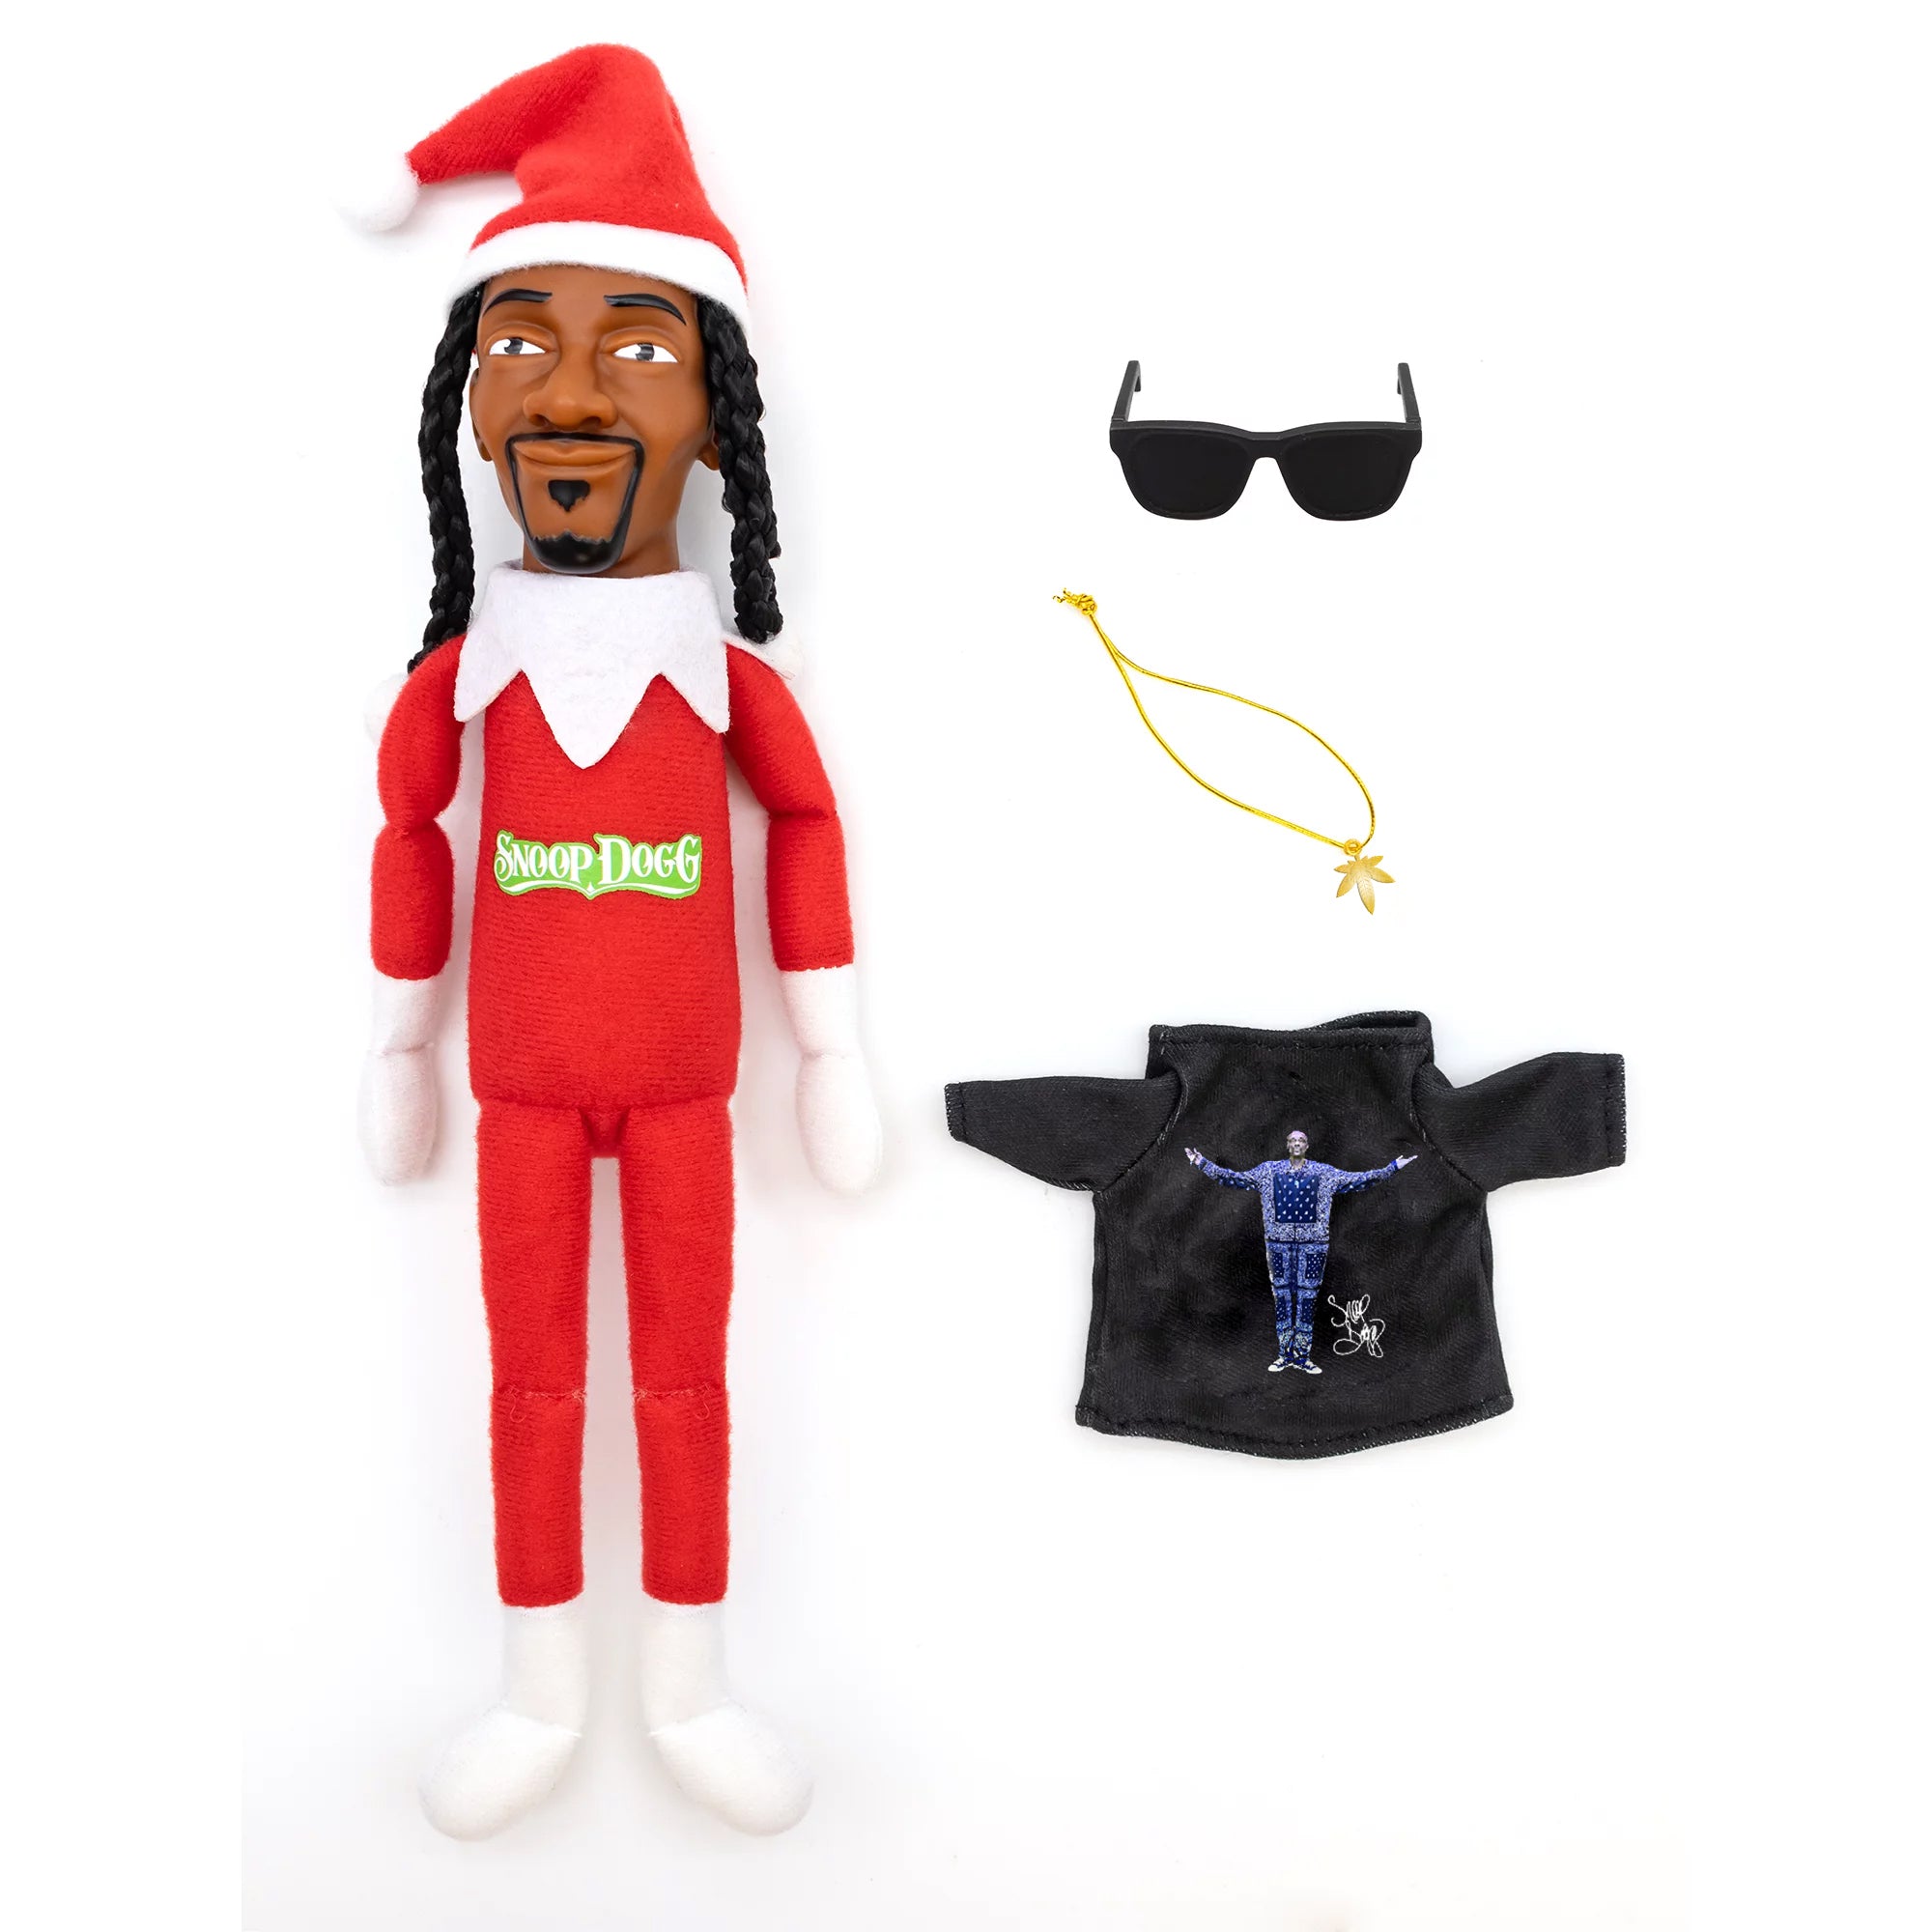 Snoop On The Stoop